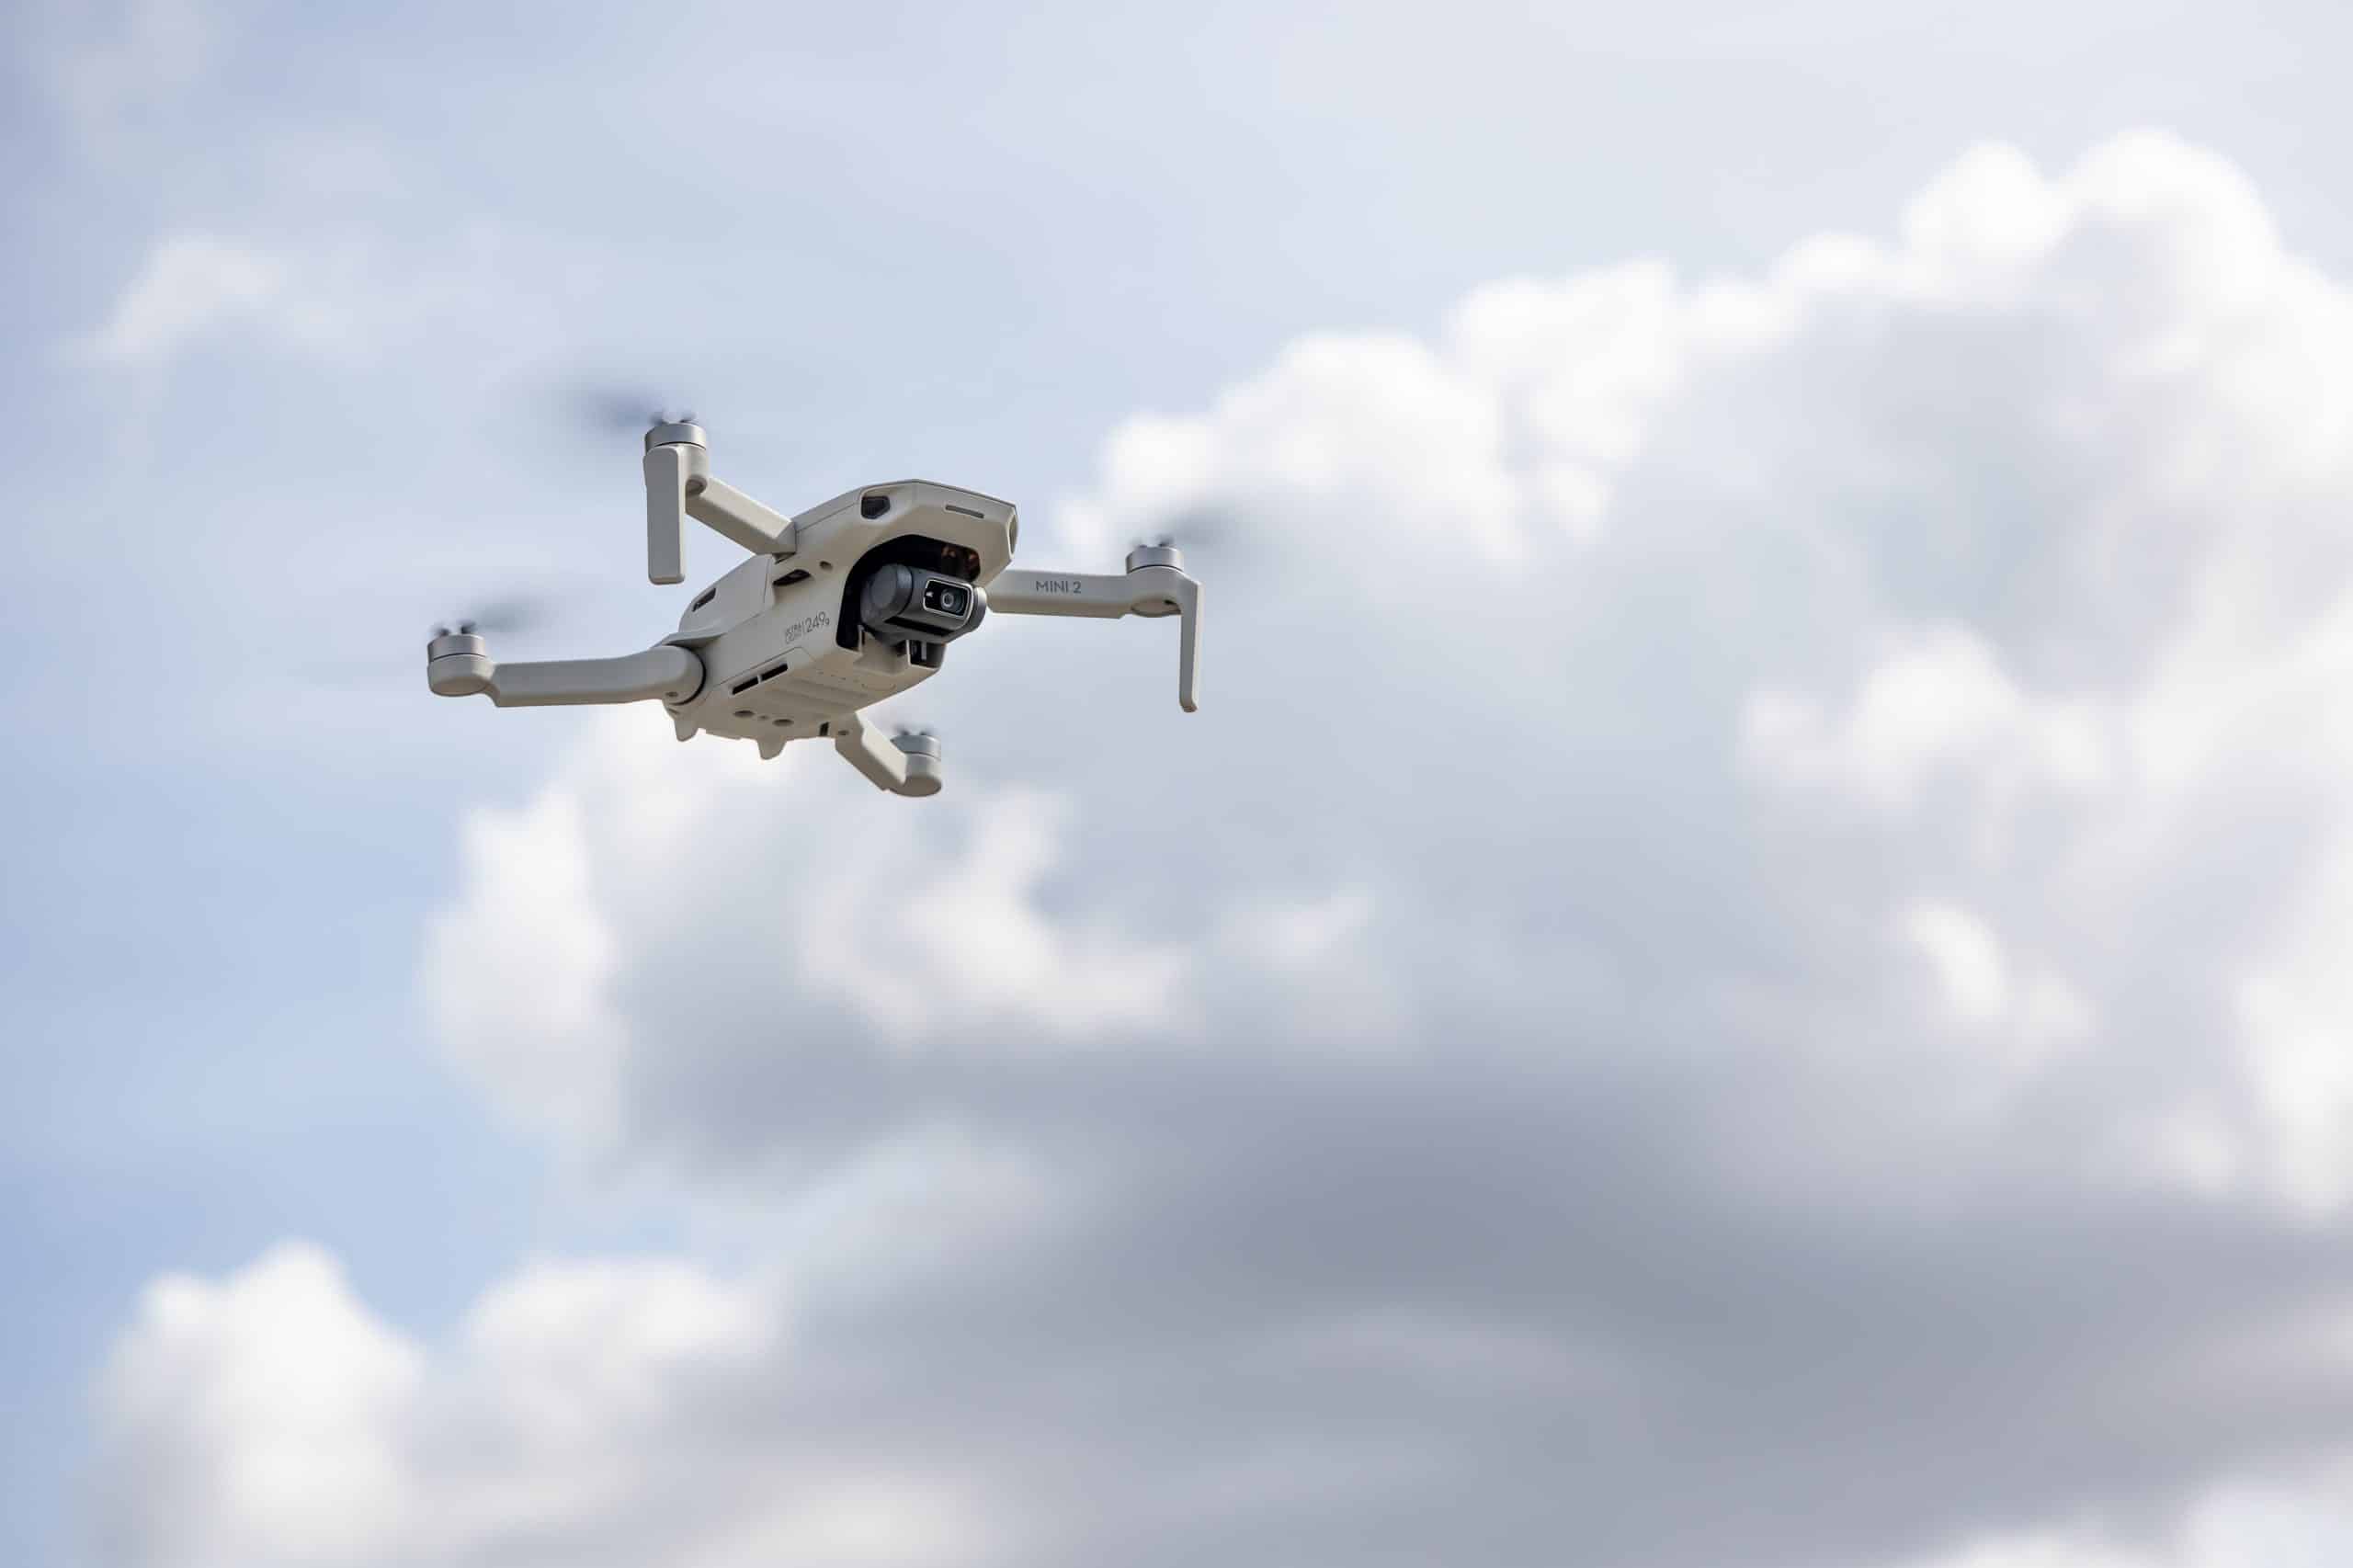 Bilde av drone i lufta. Norsk luftambulanse og Avinor samarbeider om et nytt dronevarslingssystem, som gir helikopterpiloter varsel dersom de flyr i nærheten av droner.